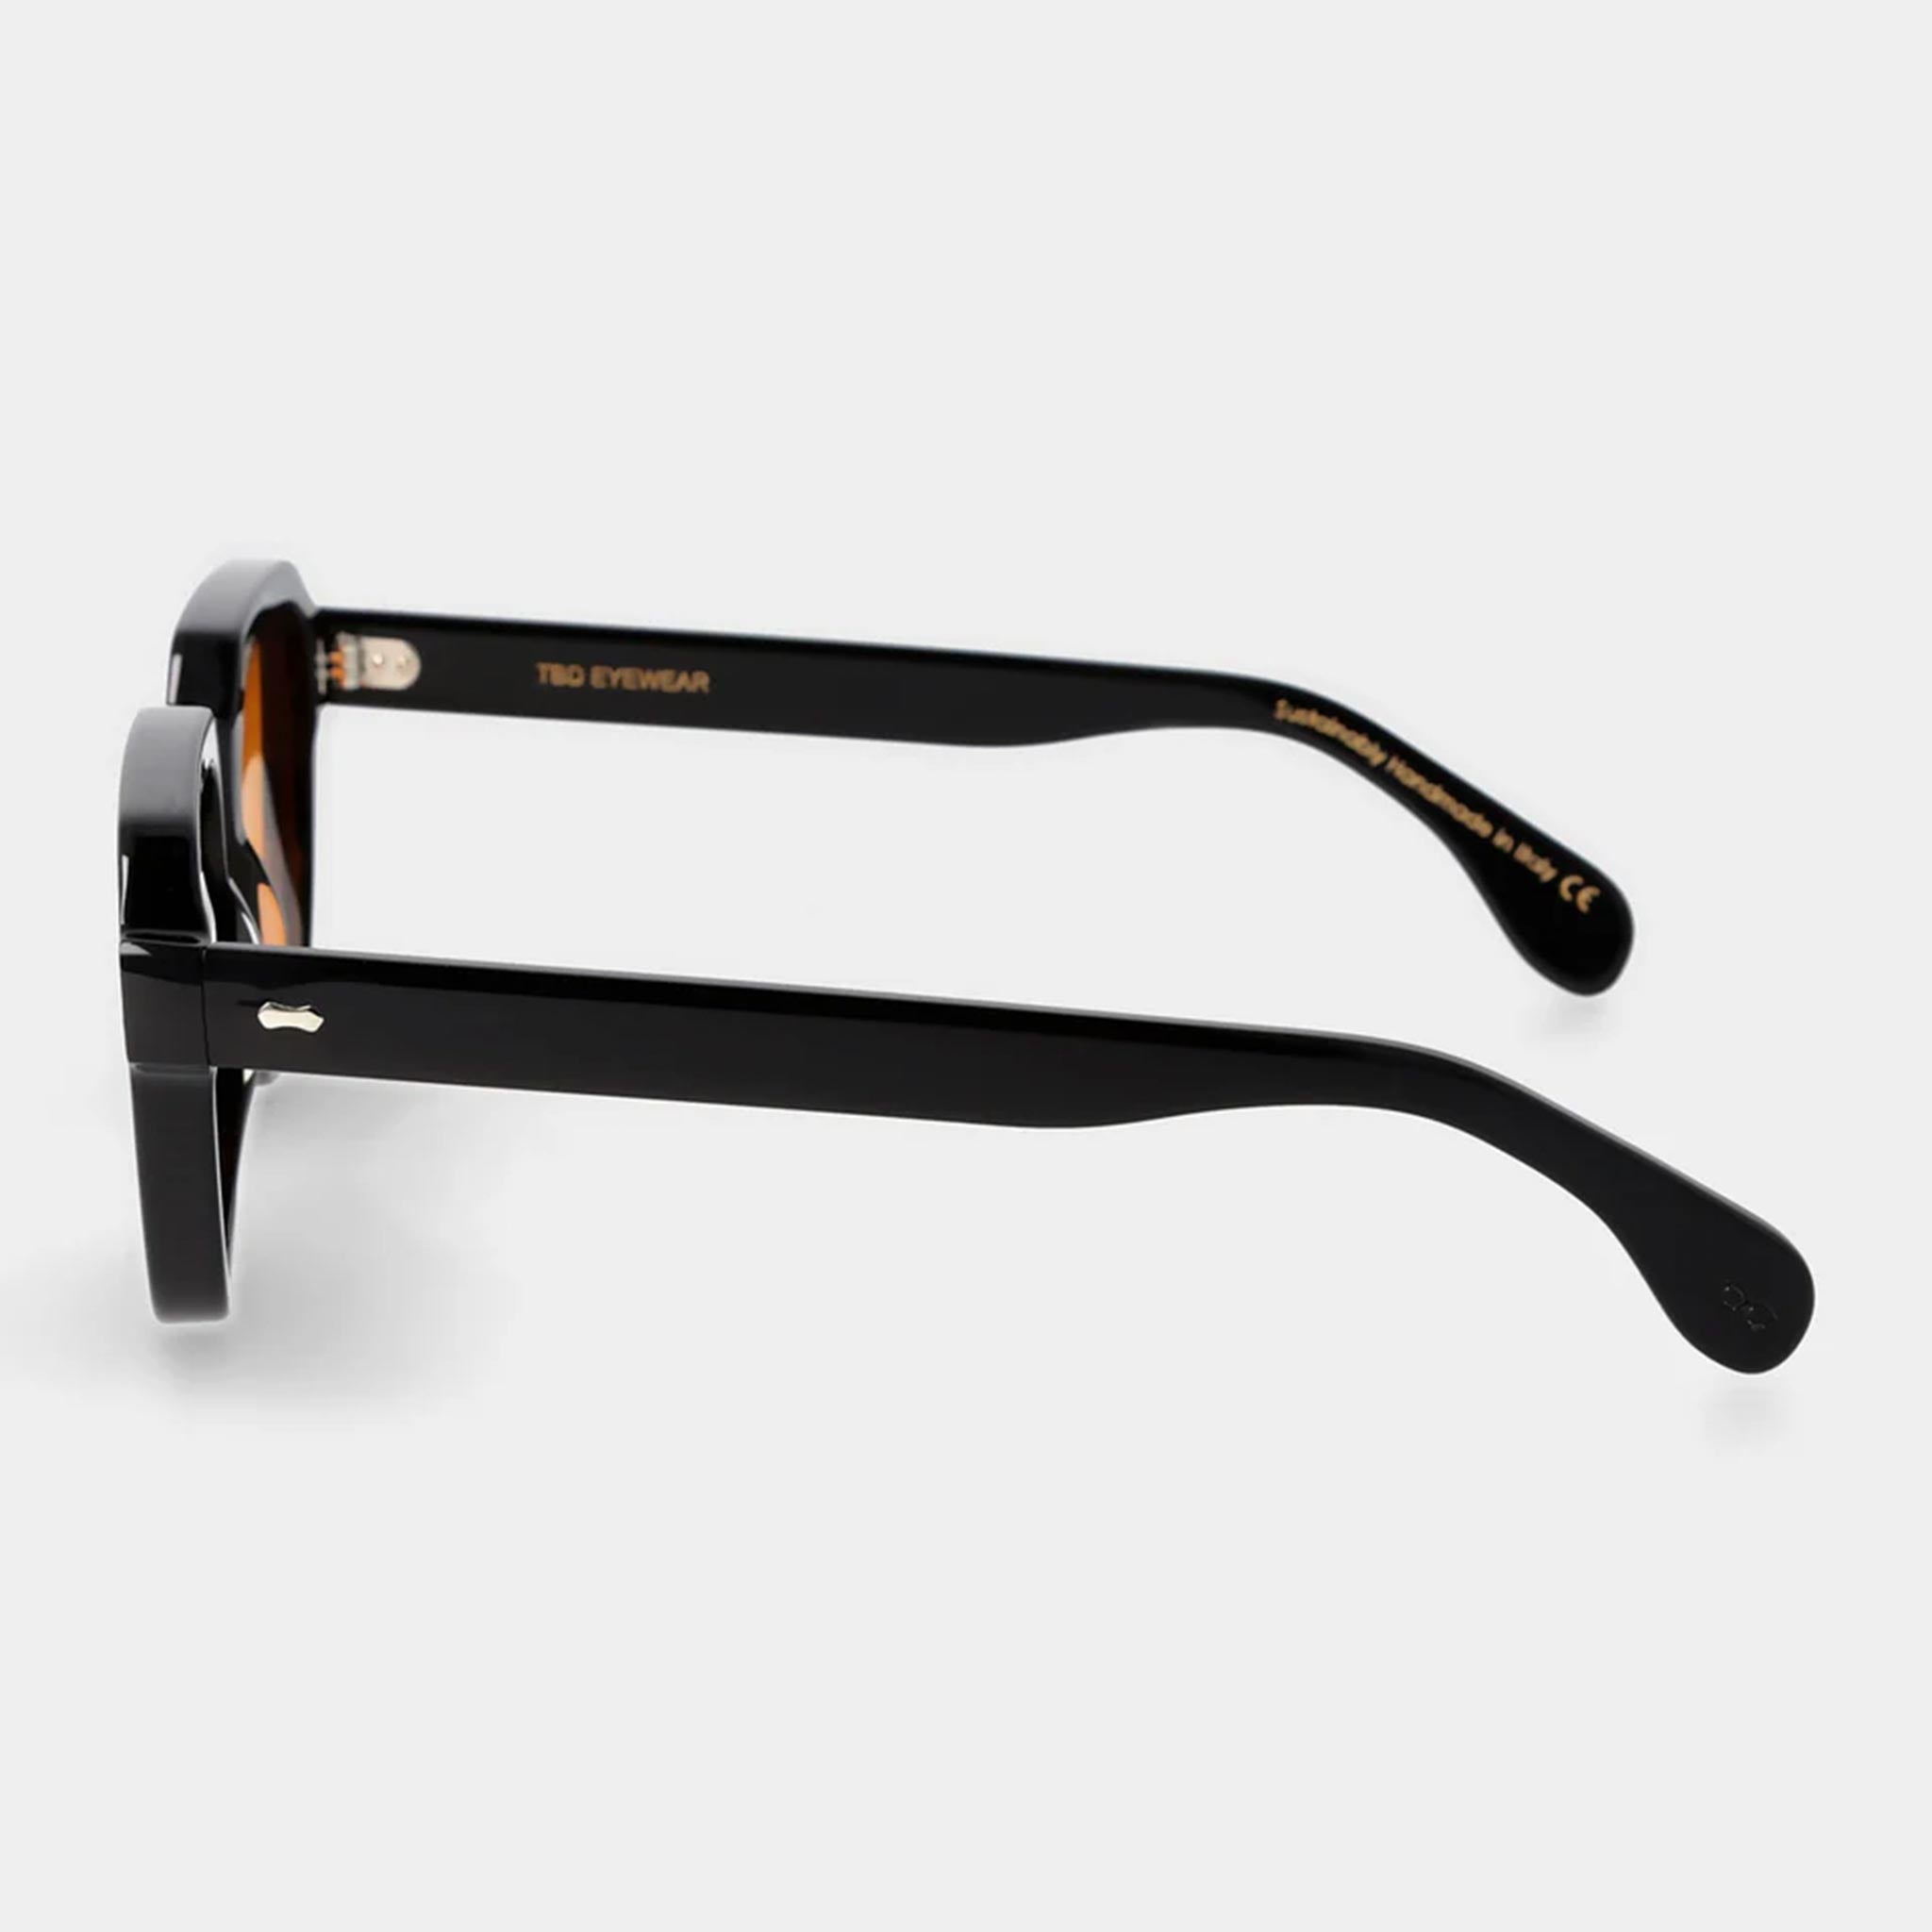 Lino Sunglasses in Black